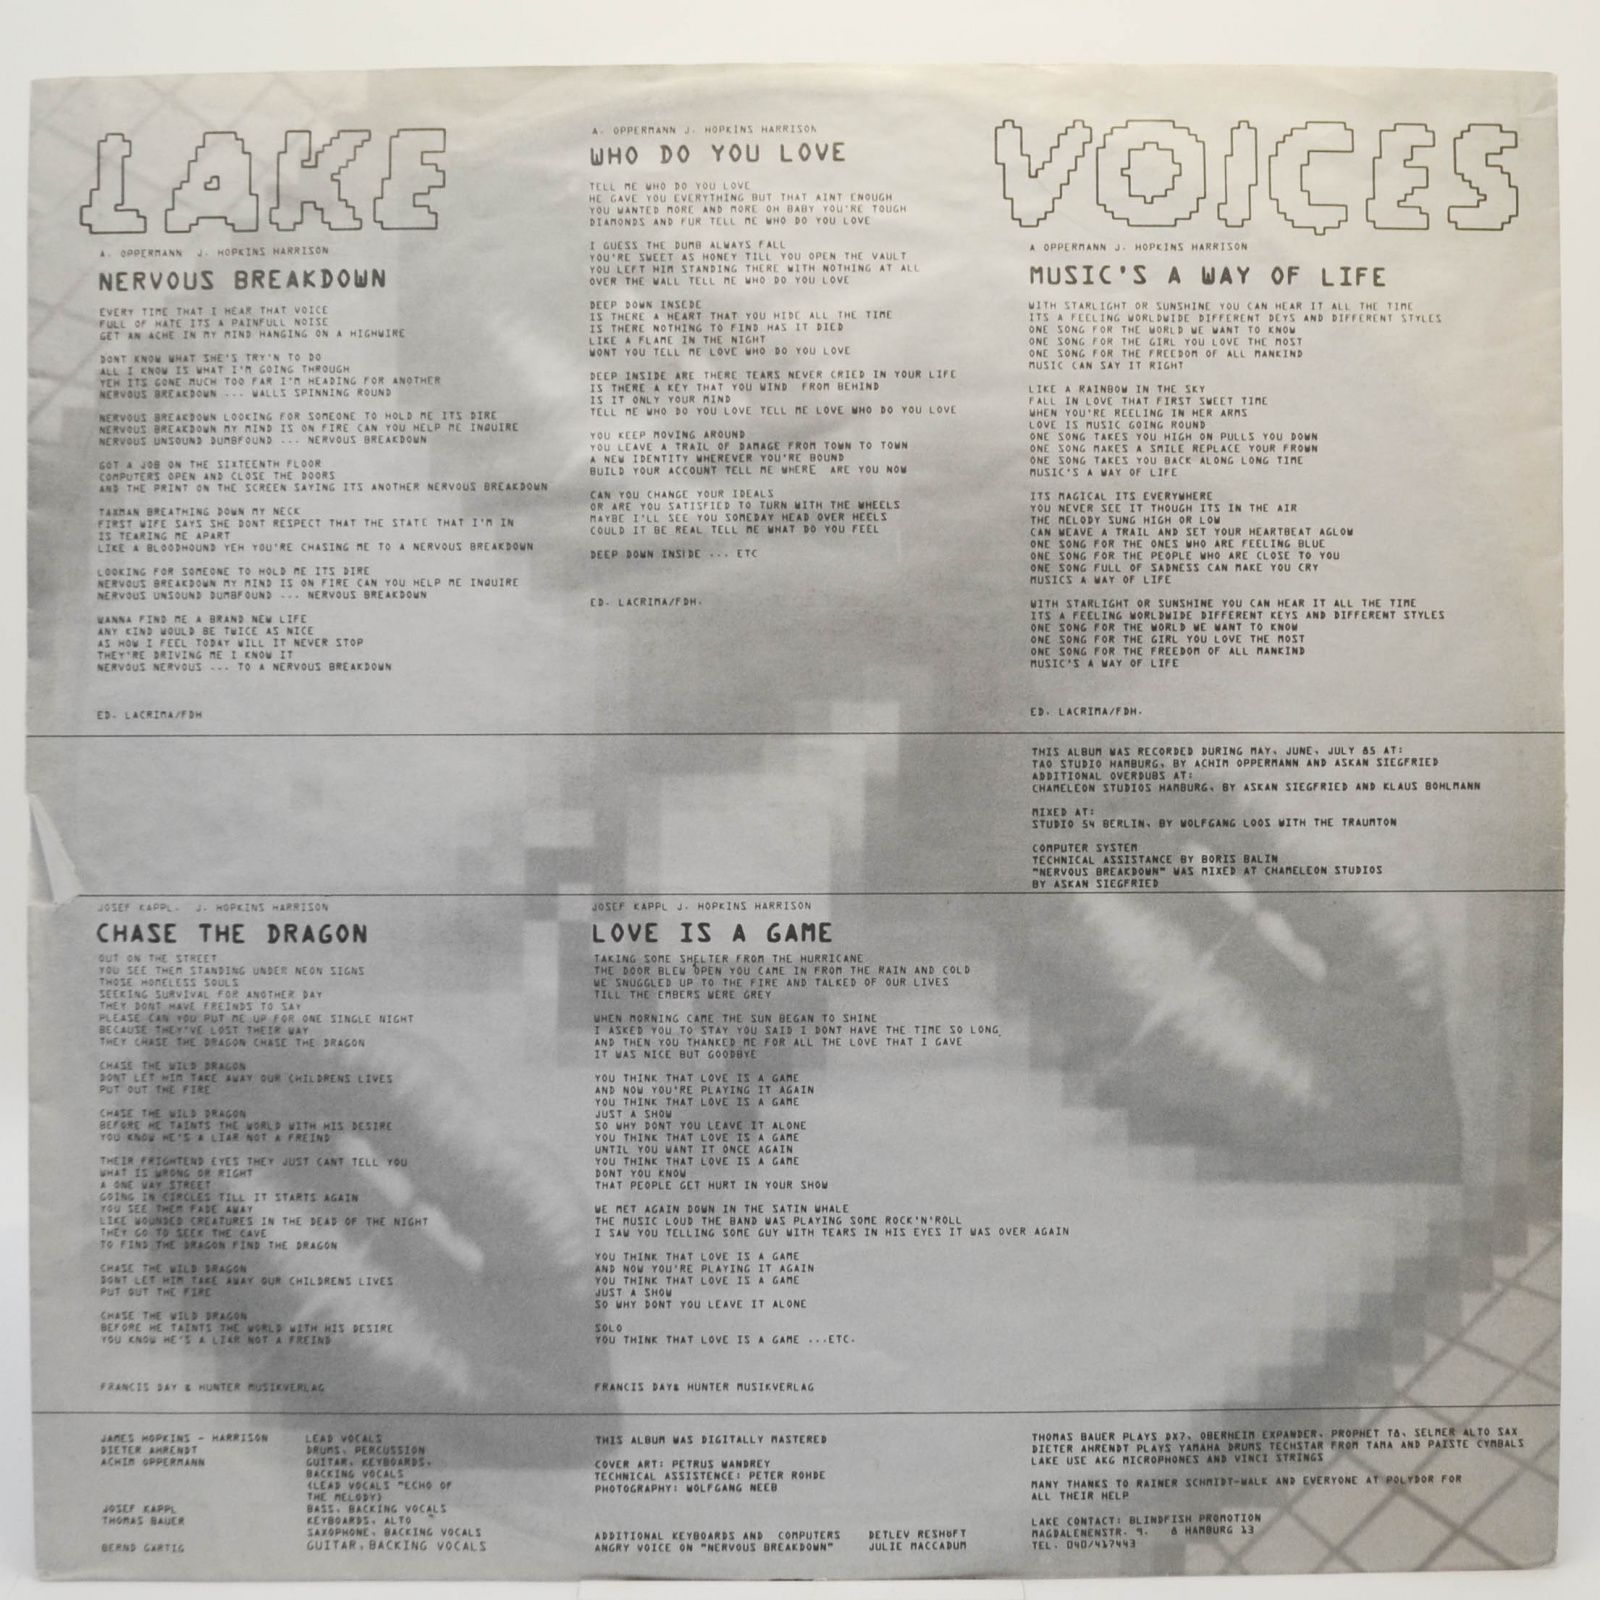 Lake — Voices, 1985